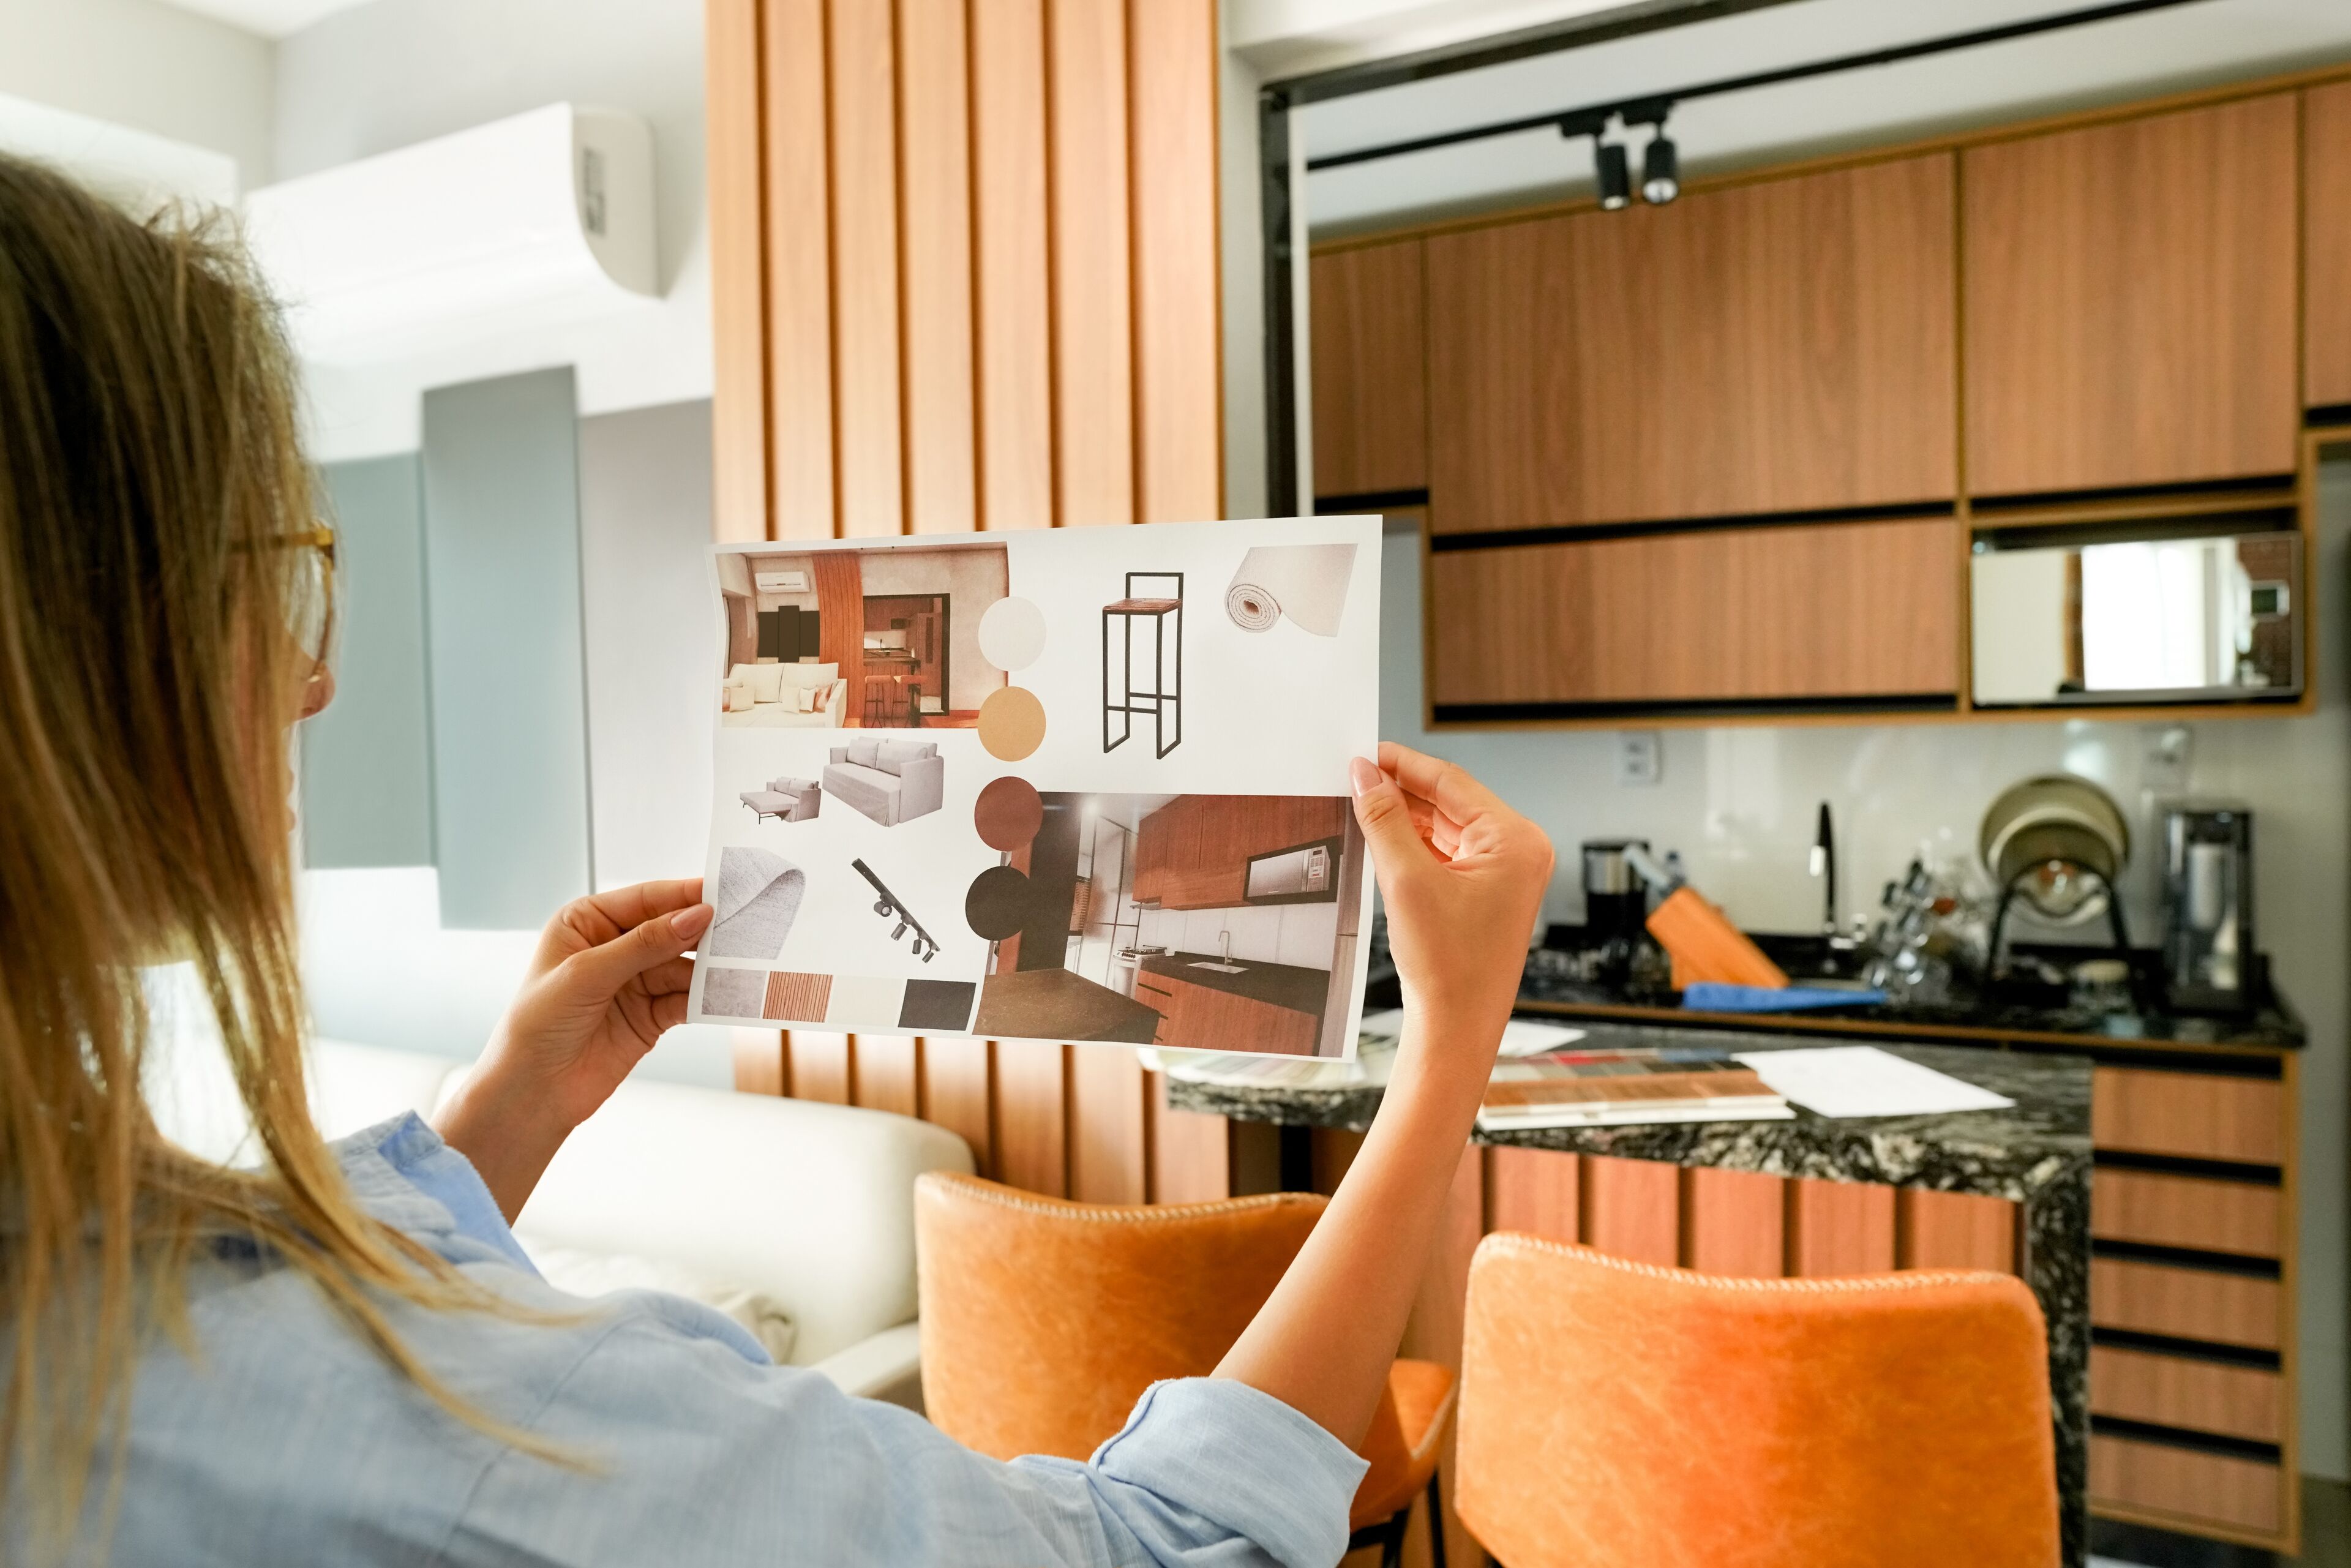 Una persona examina un tauler d'ambients que conté diversos elements de disseny interior per a un projecte de renovació de l'habitatge.